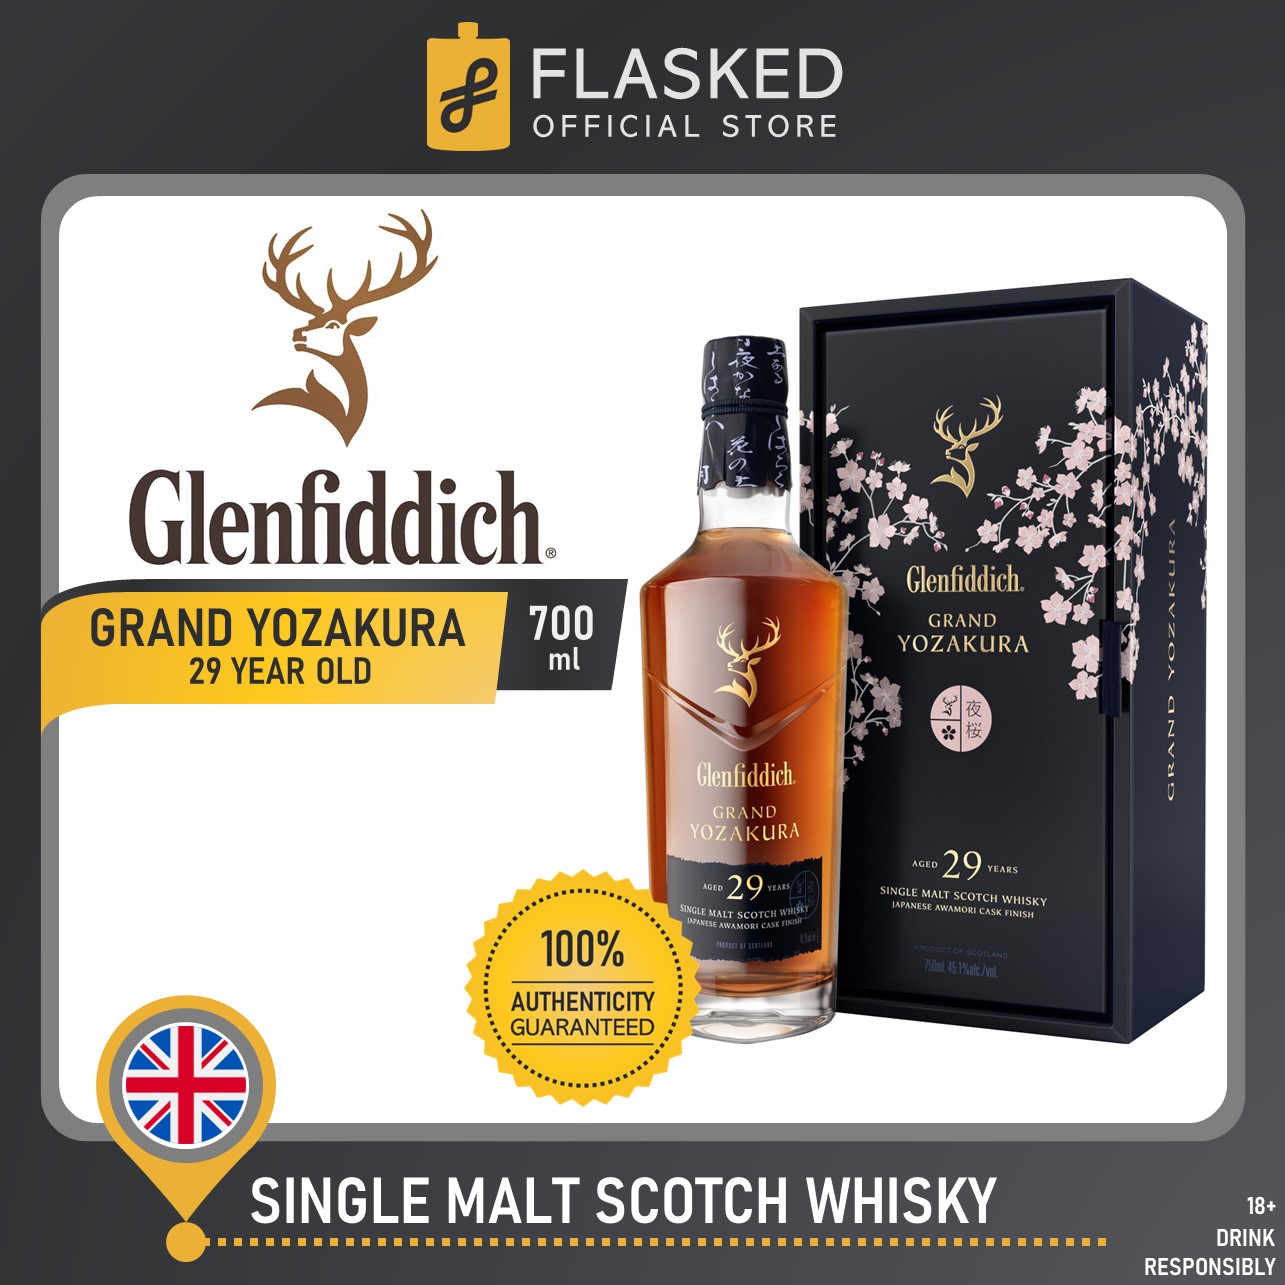 Glenfiddich 'Grand Yozakura' 29 Year Old Scotch Whisky 750ml